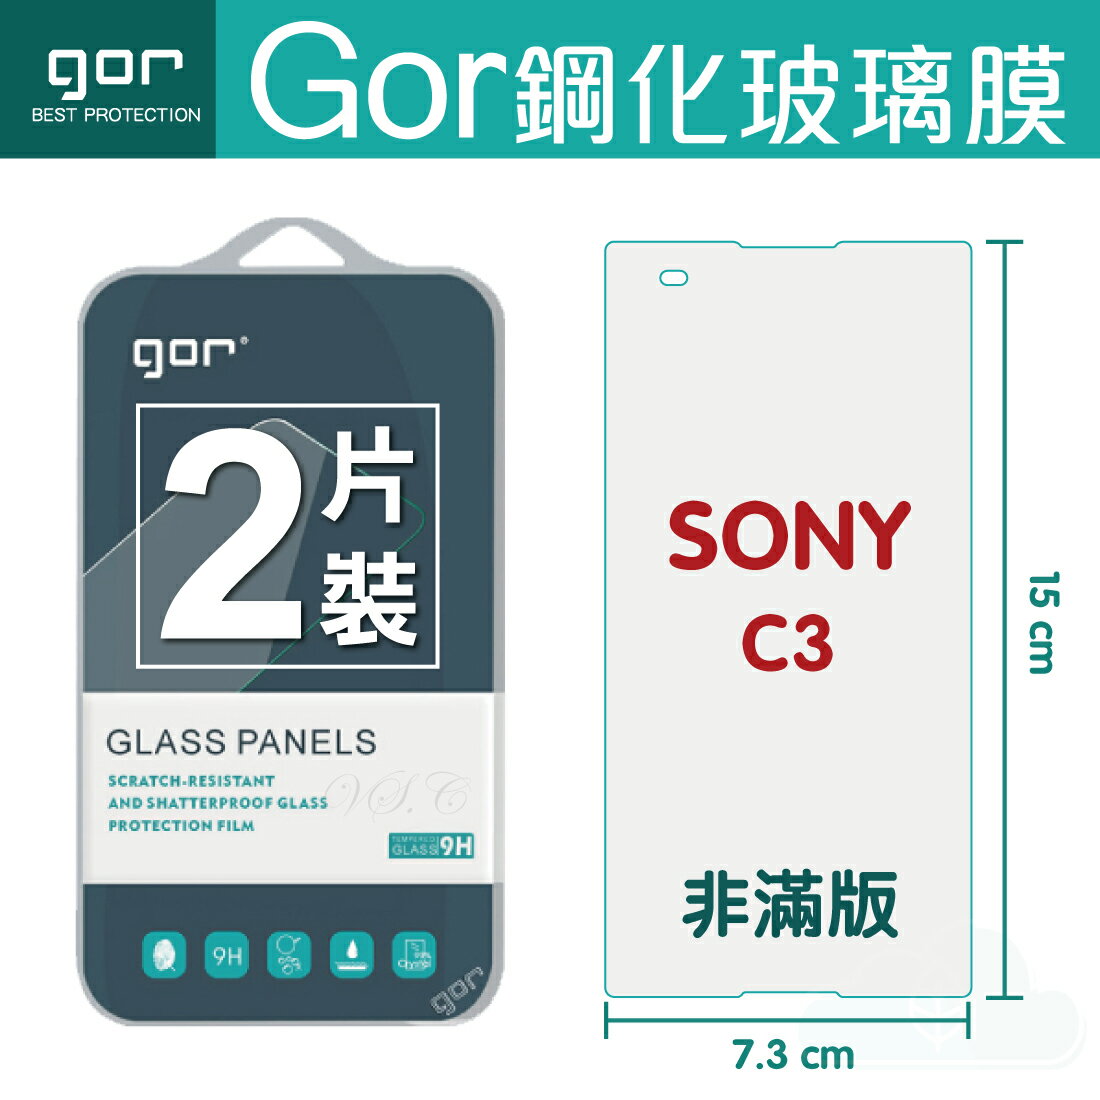 【SONY】GOR 9H SONY Xperia C3 鋼化 玻璃 保護貼 全透明非滿版 兩片裝【全館滿299免運費】